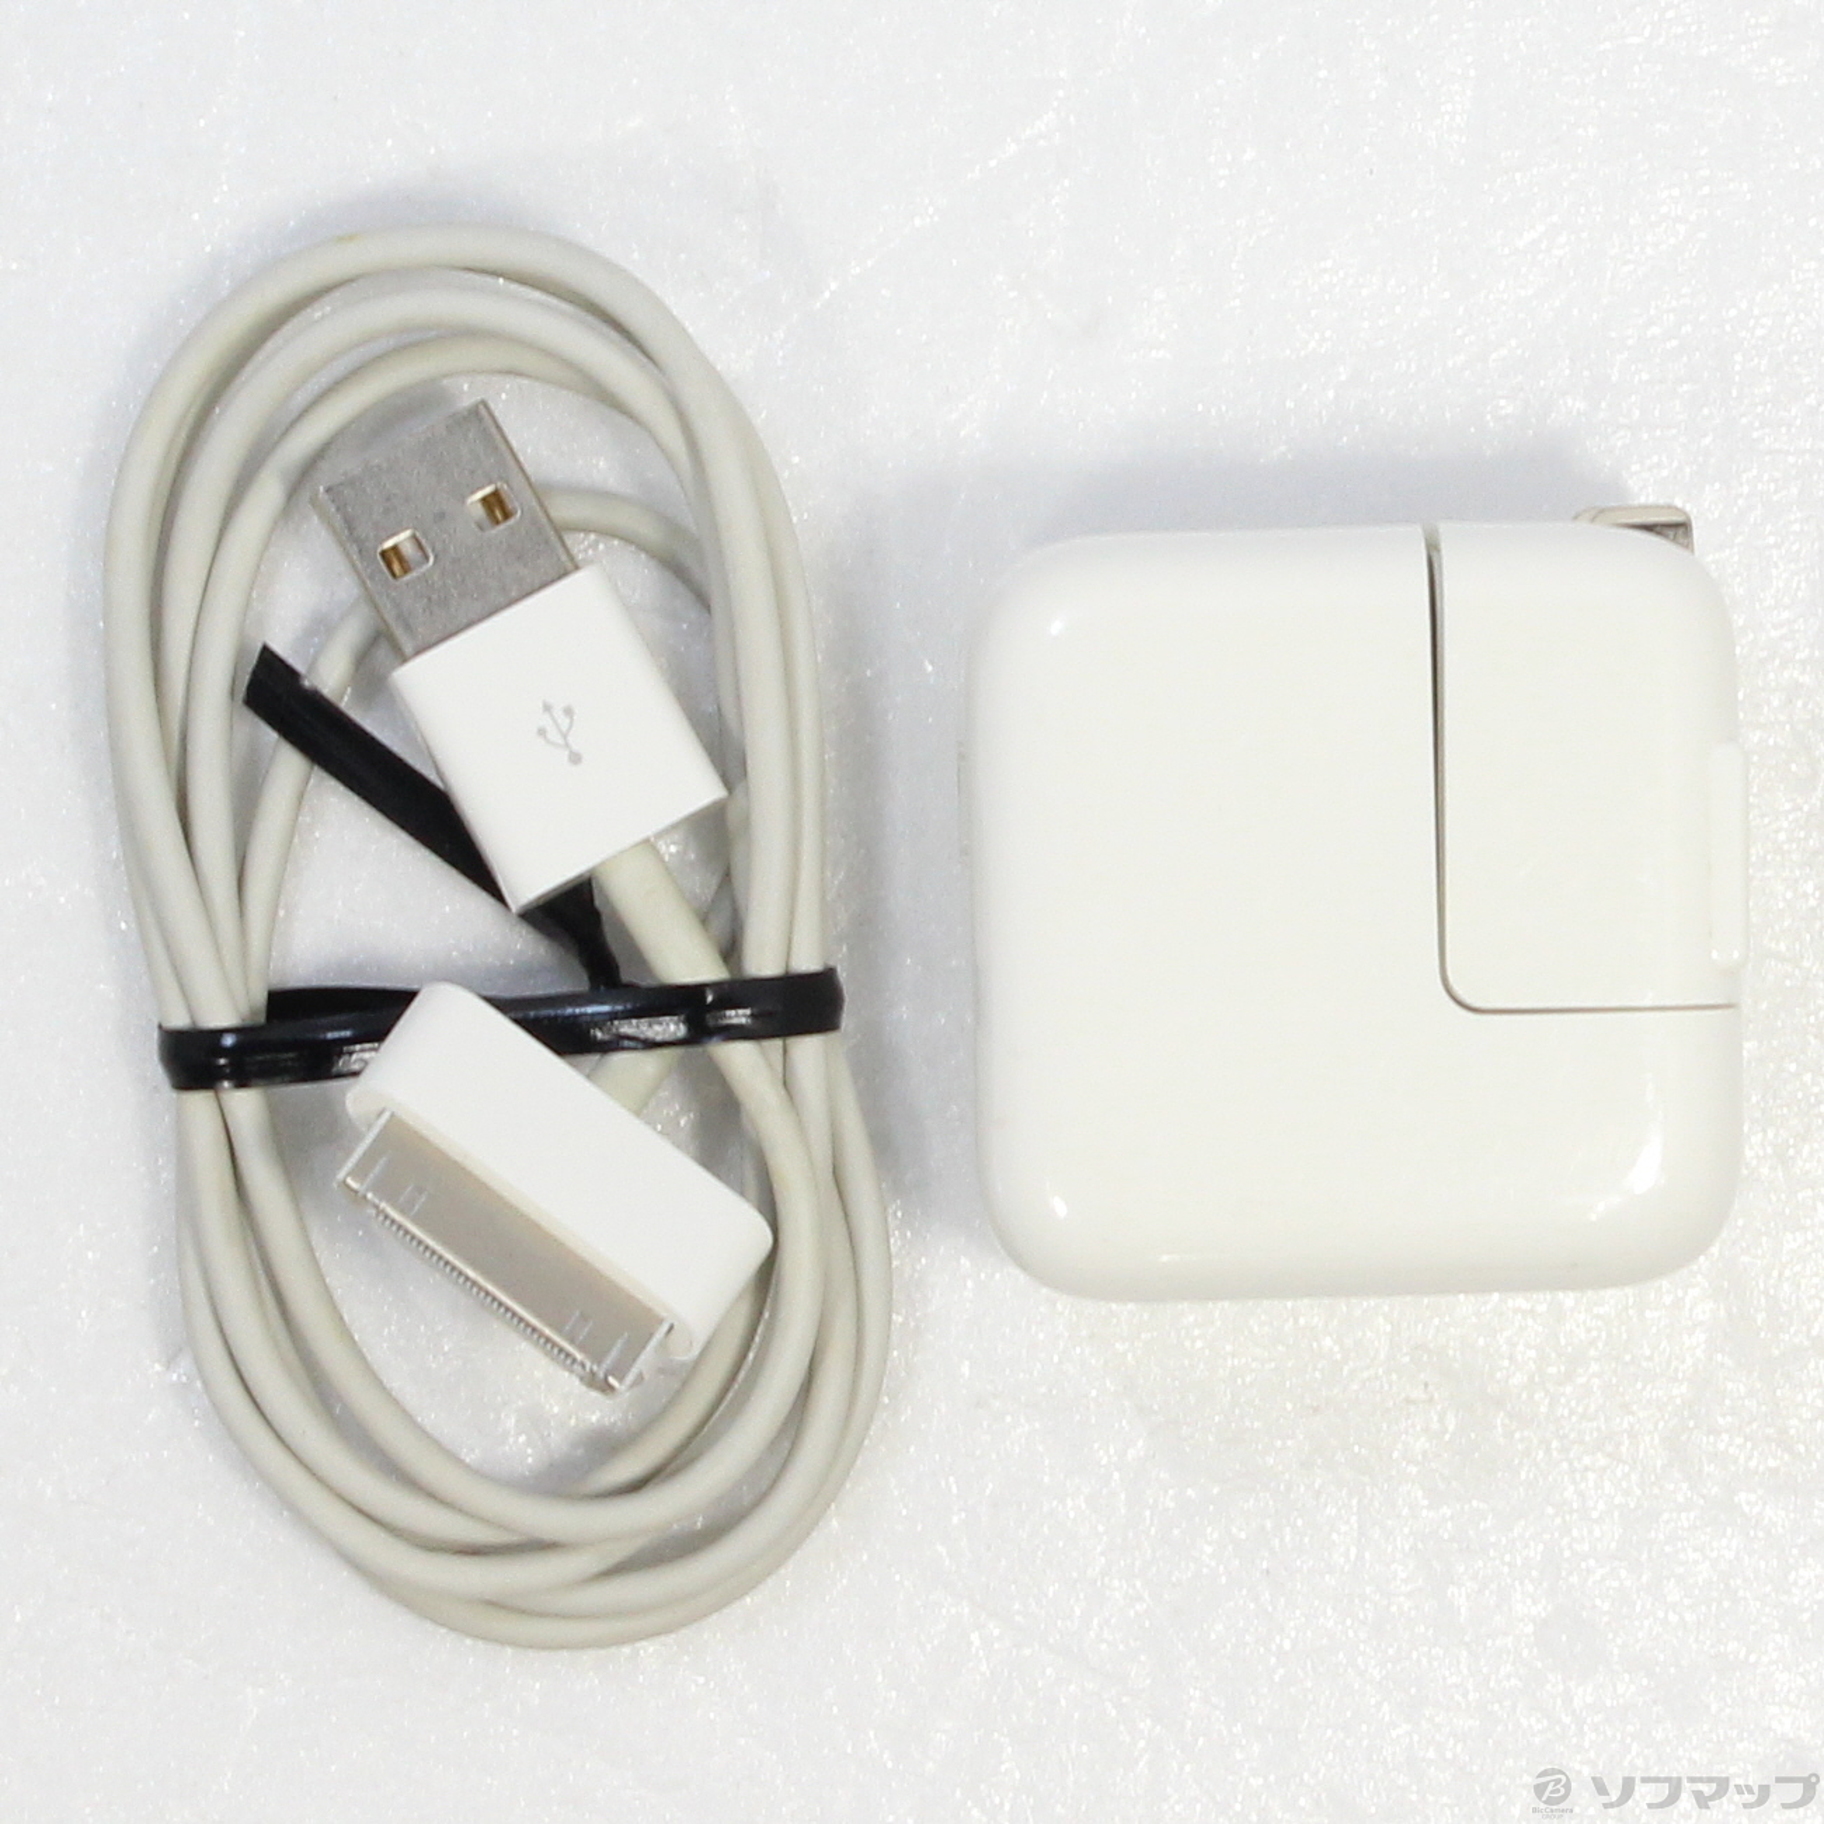 16GB ホワイト MD369J  人気の雑貨がズラリ 中古 Apple  A SoftBank 251-ud  アップル iPad 第3世代